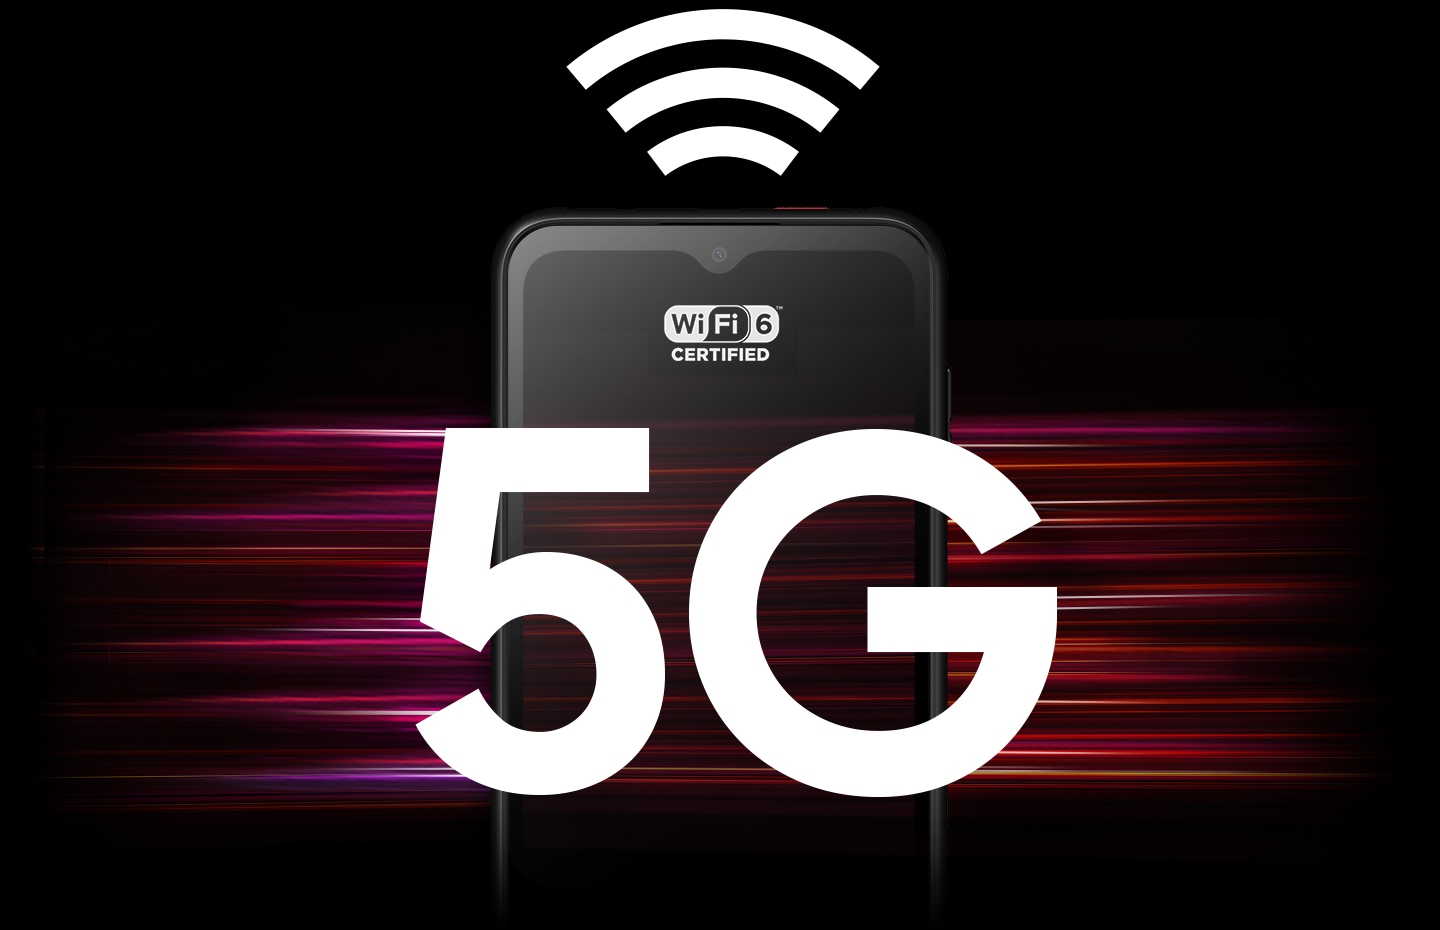 Ein Galaxy XCover6 Pro mit dem WiFi 6-Logo auf dem Bildschirm, mit einem großen WiFi-Logo über dem Gerät und 5G in großer Schrift über dem Gerät.